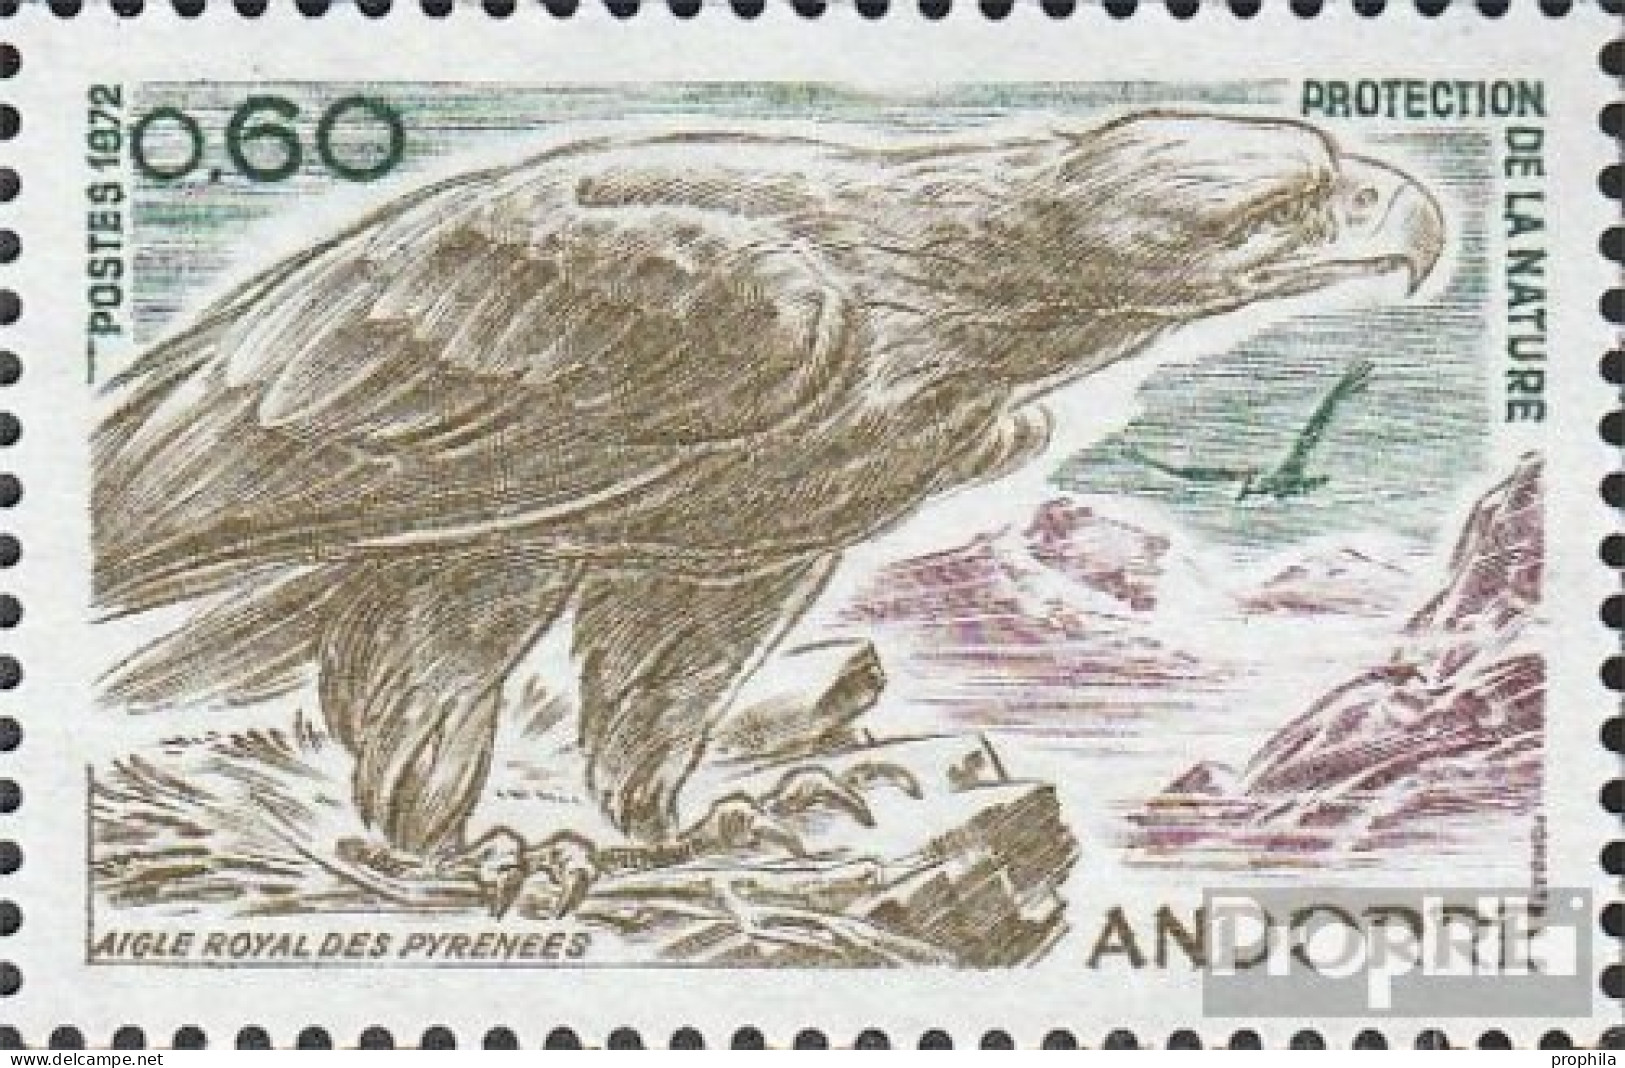 Andorra - Französische Post 240 (kompl.Ausg.) Postfrisch 1972 Naturschutz - Steinadler - Markenheftchen